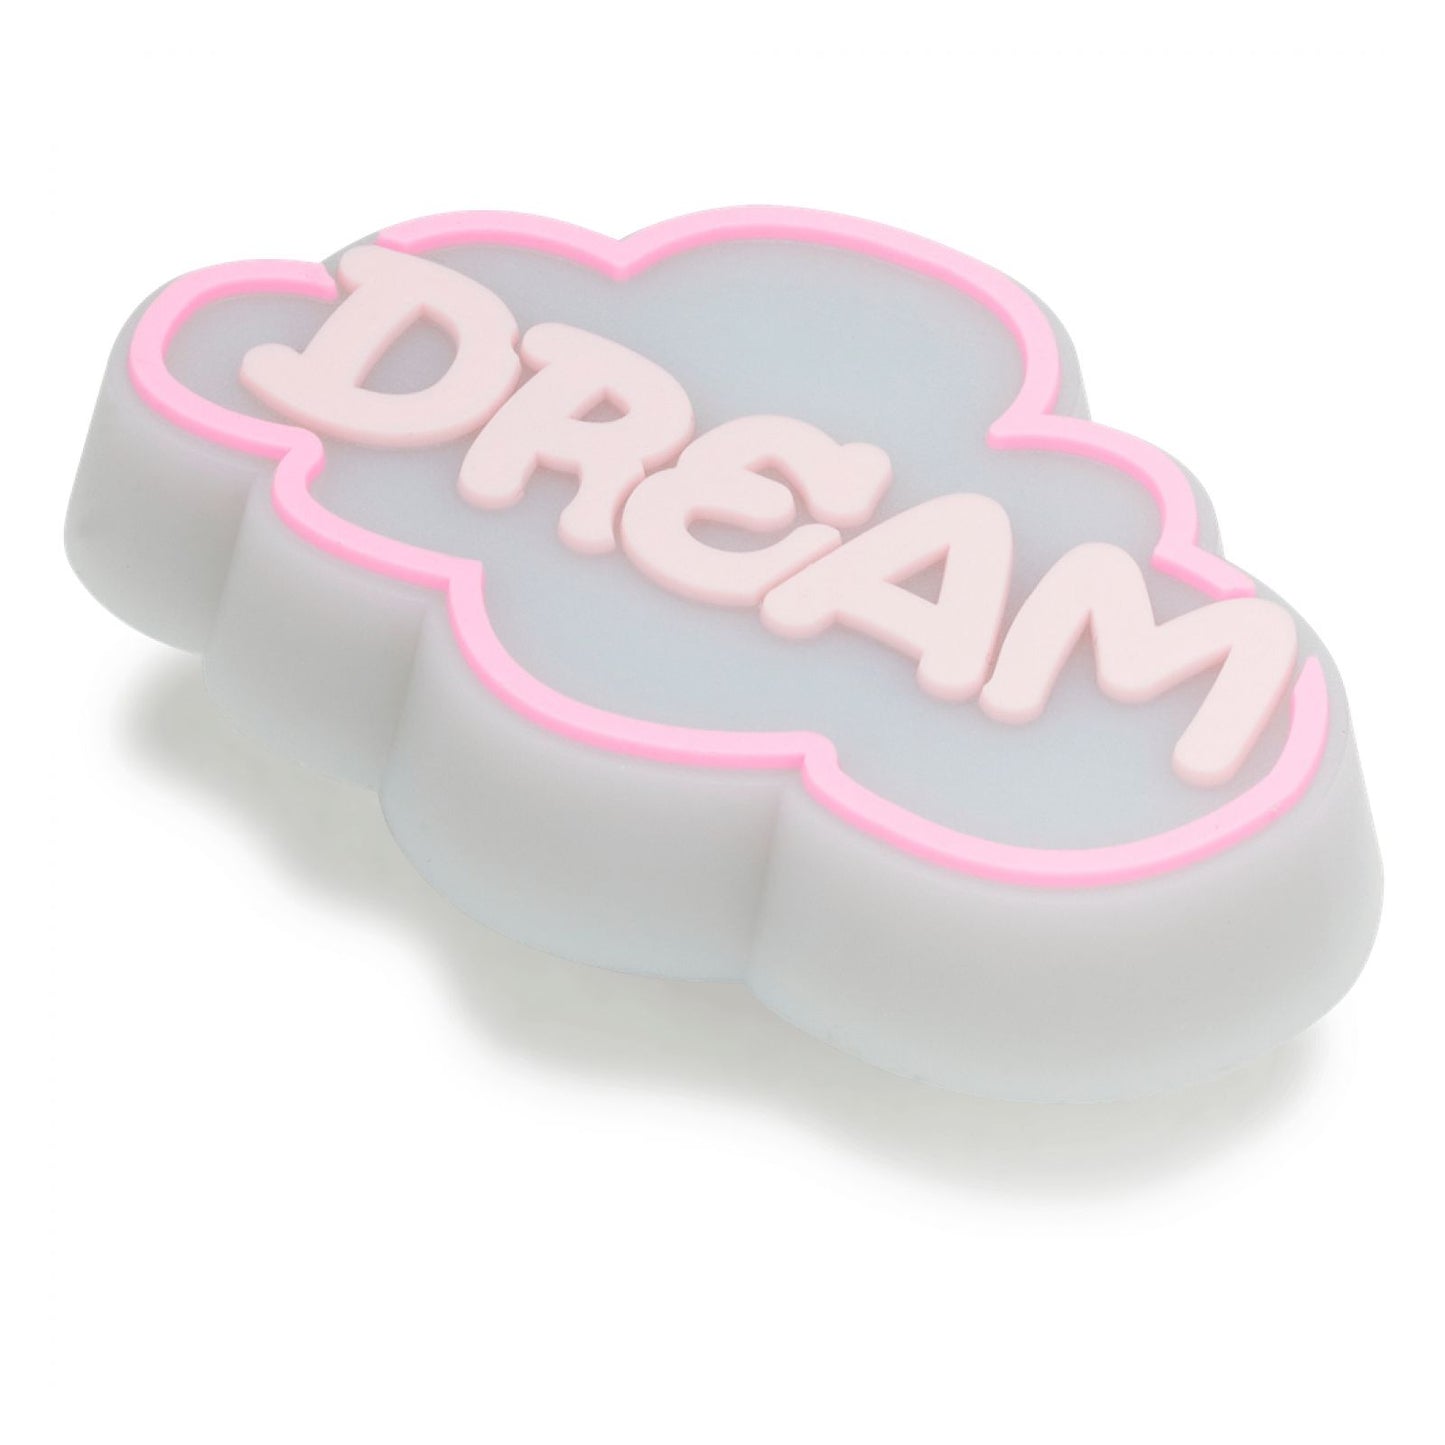 Jibbitz Unisex Light Up Dream Cloud Símbolos